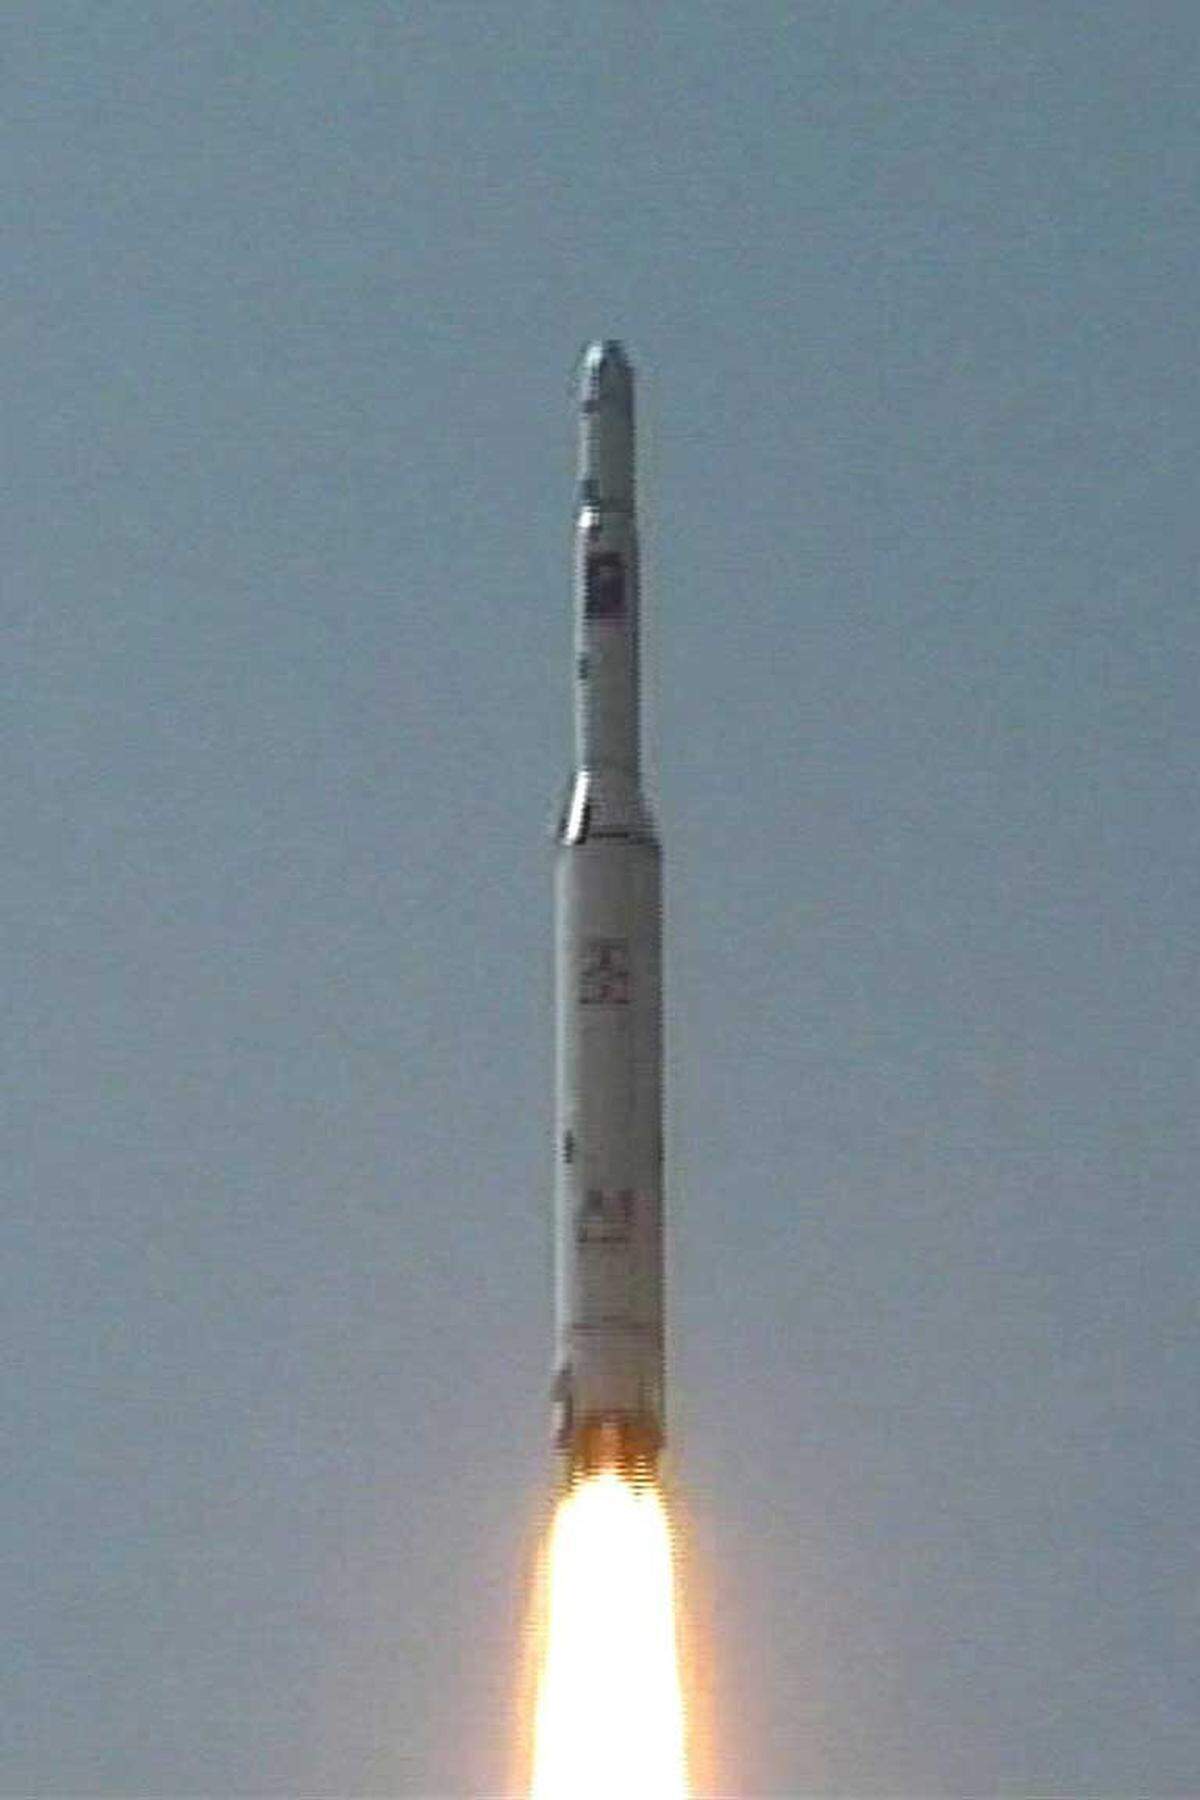 Am 5. April 2009 startet Nordkorea eine mehrstufige Rakete mit großer Reichweite. Pjönjang behauptet, mit der Rakete einen Kommunikationssatelliten ins All geschossen zu haben.